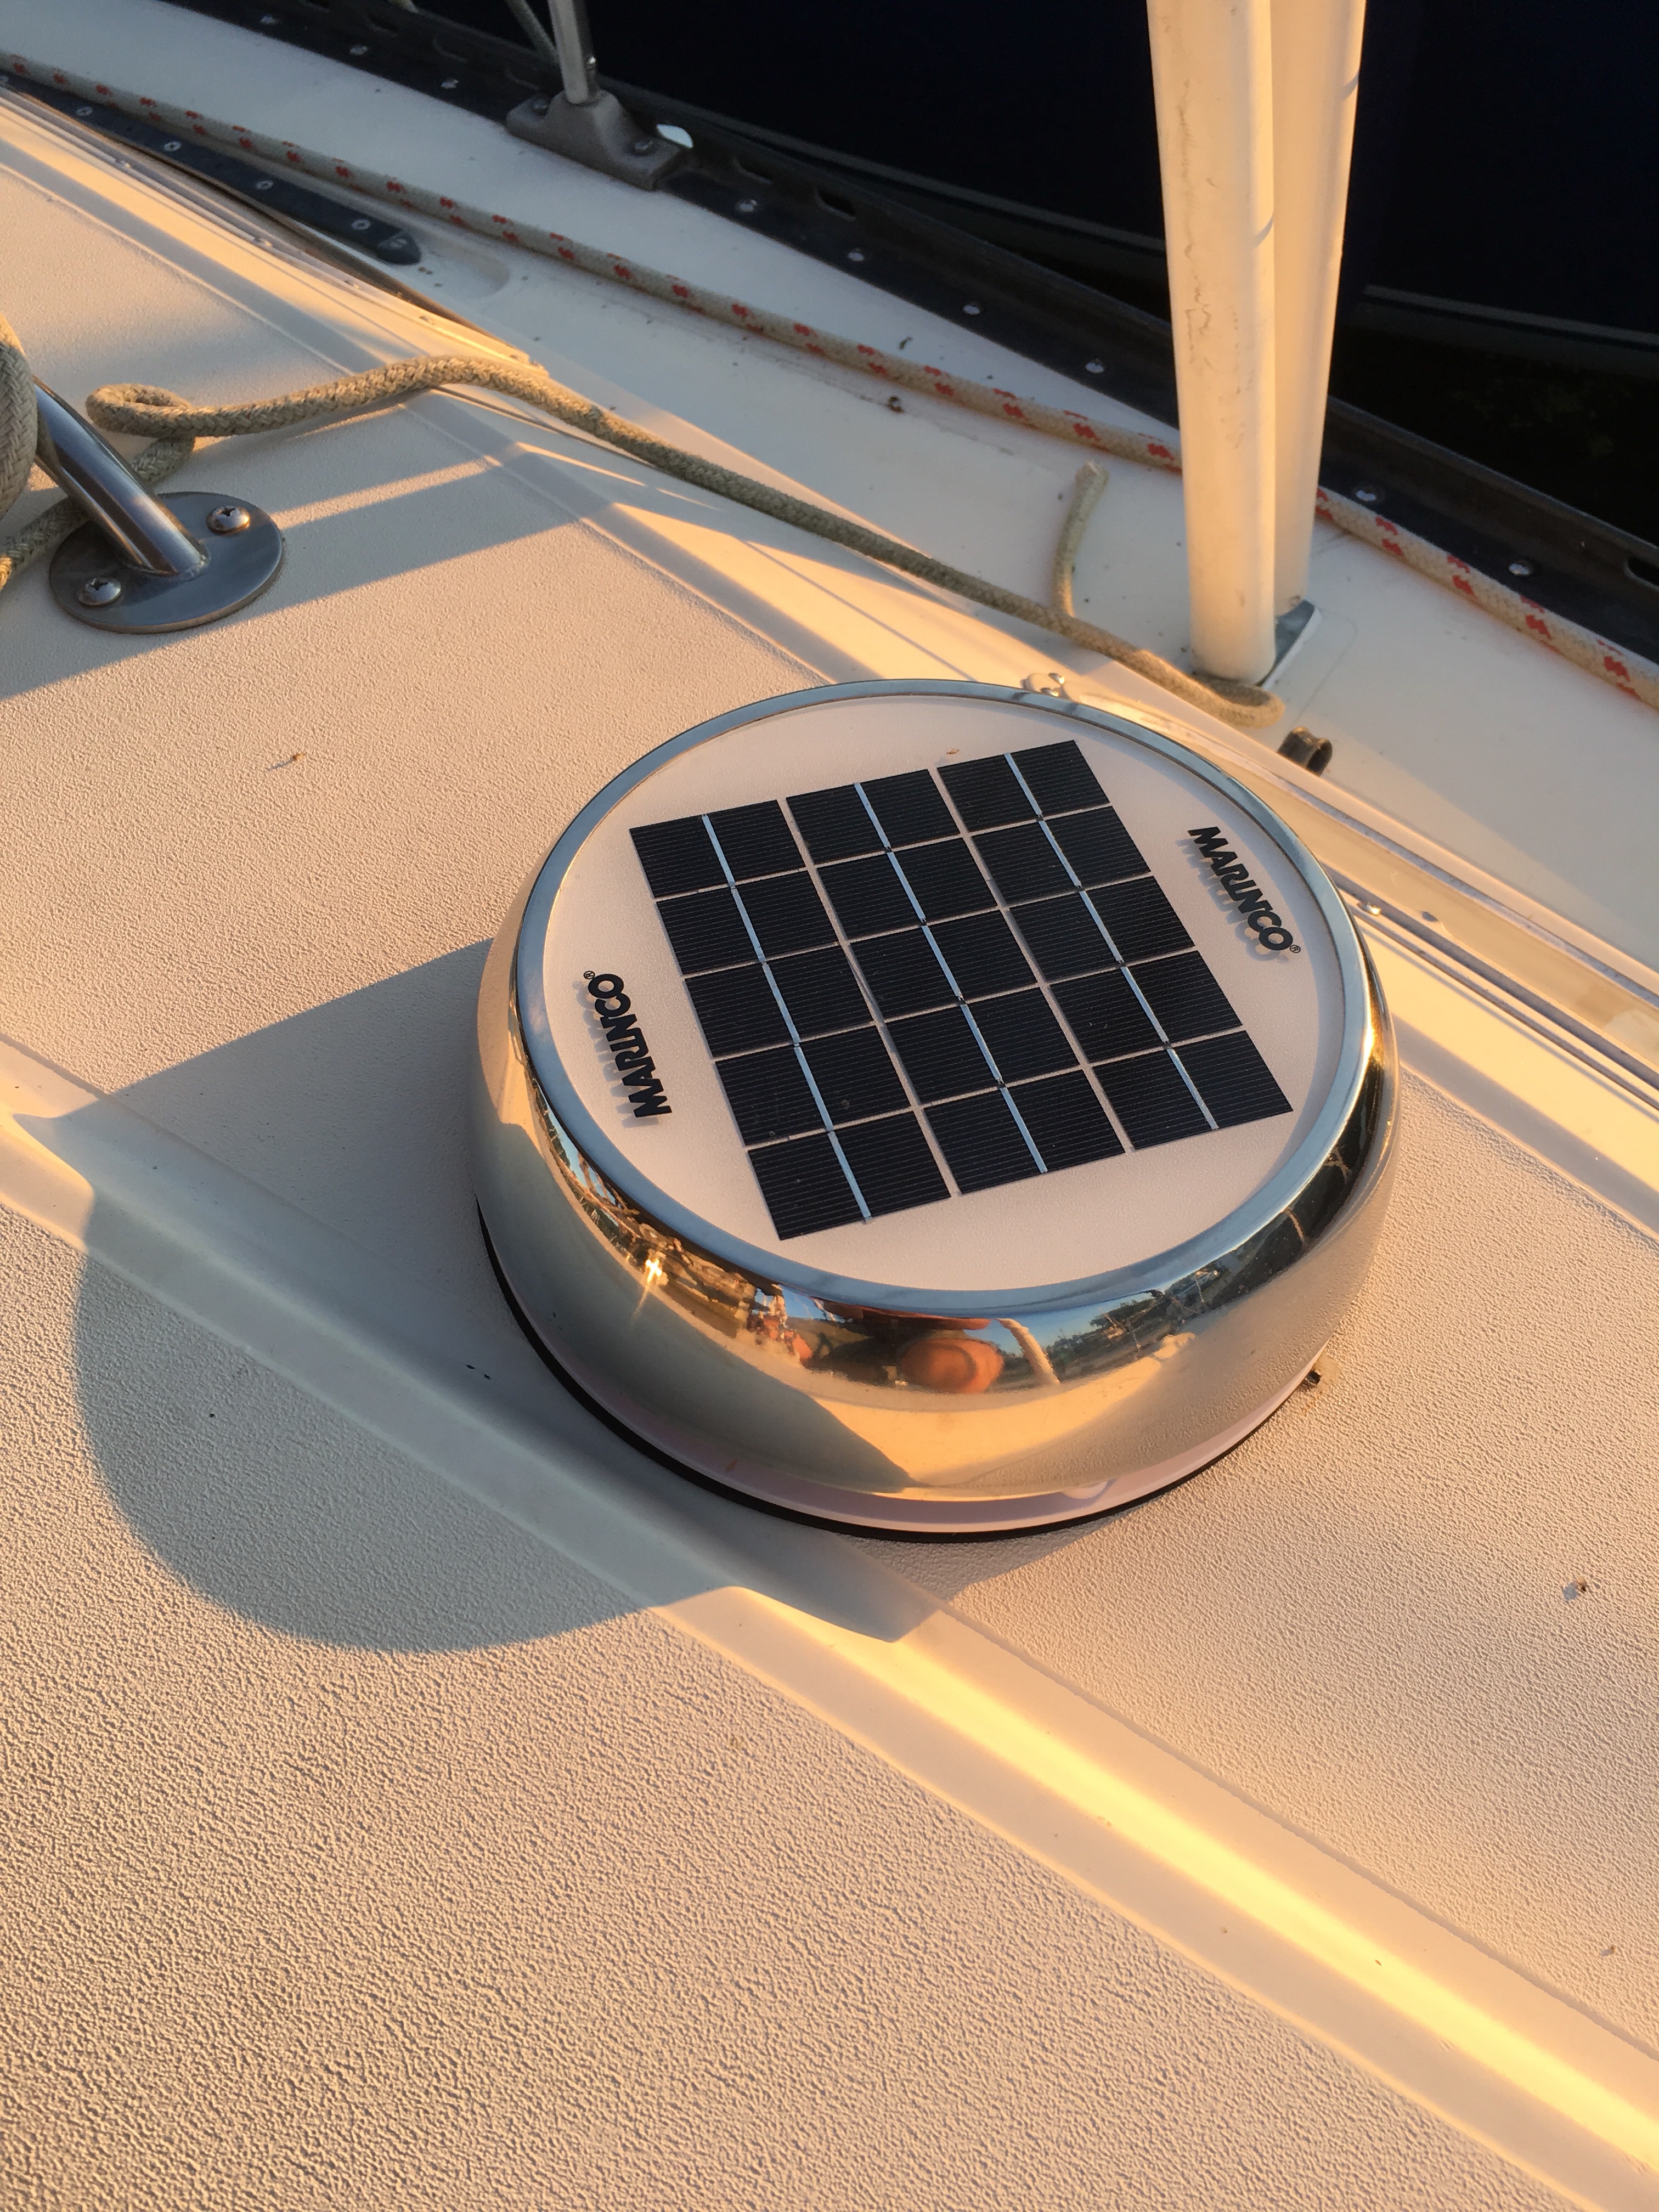 Sailboat solar fan